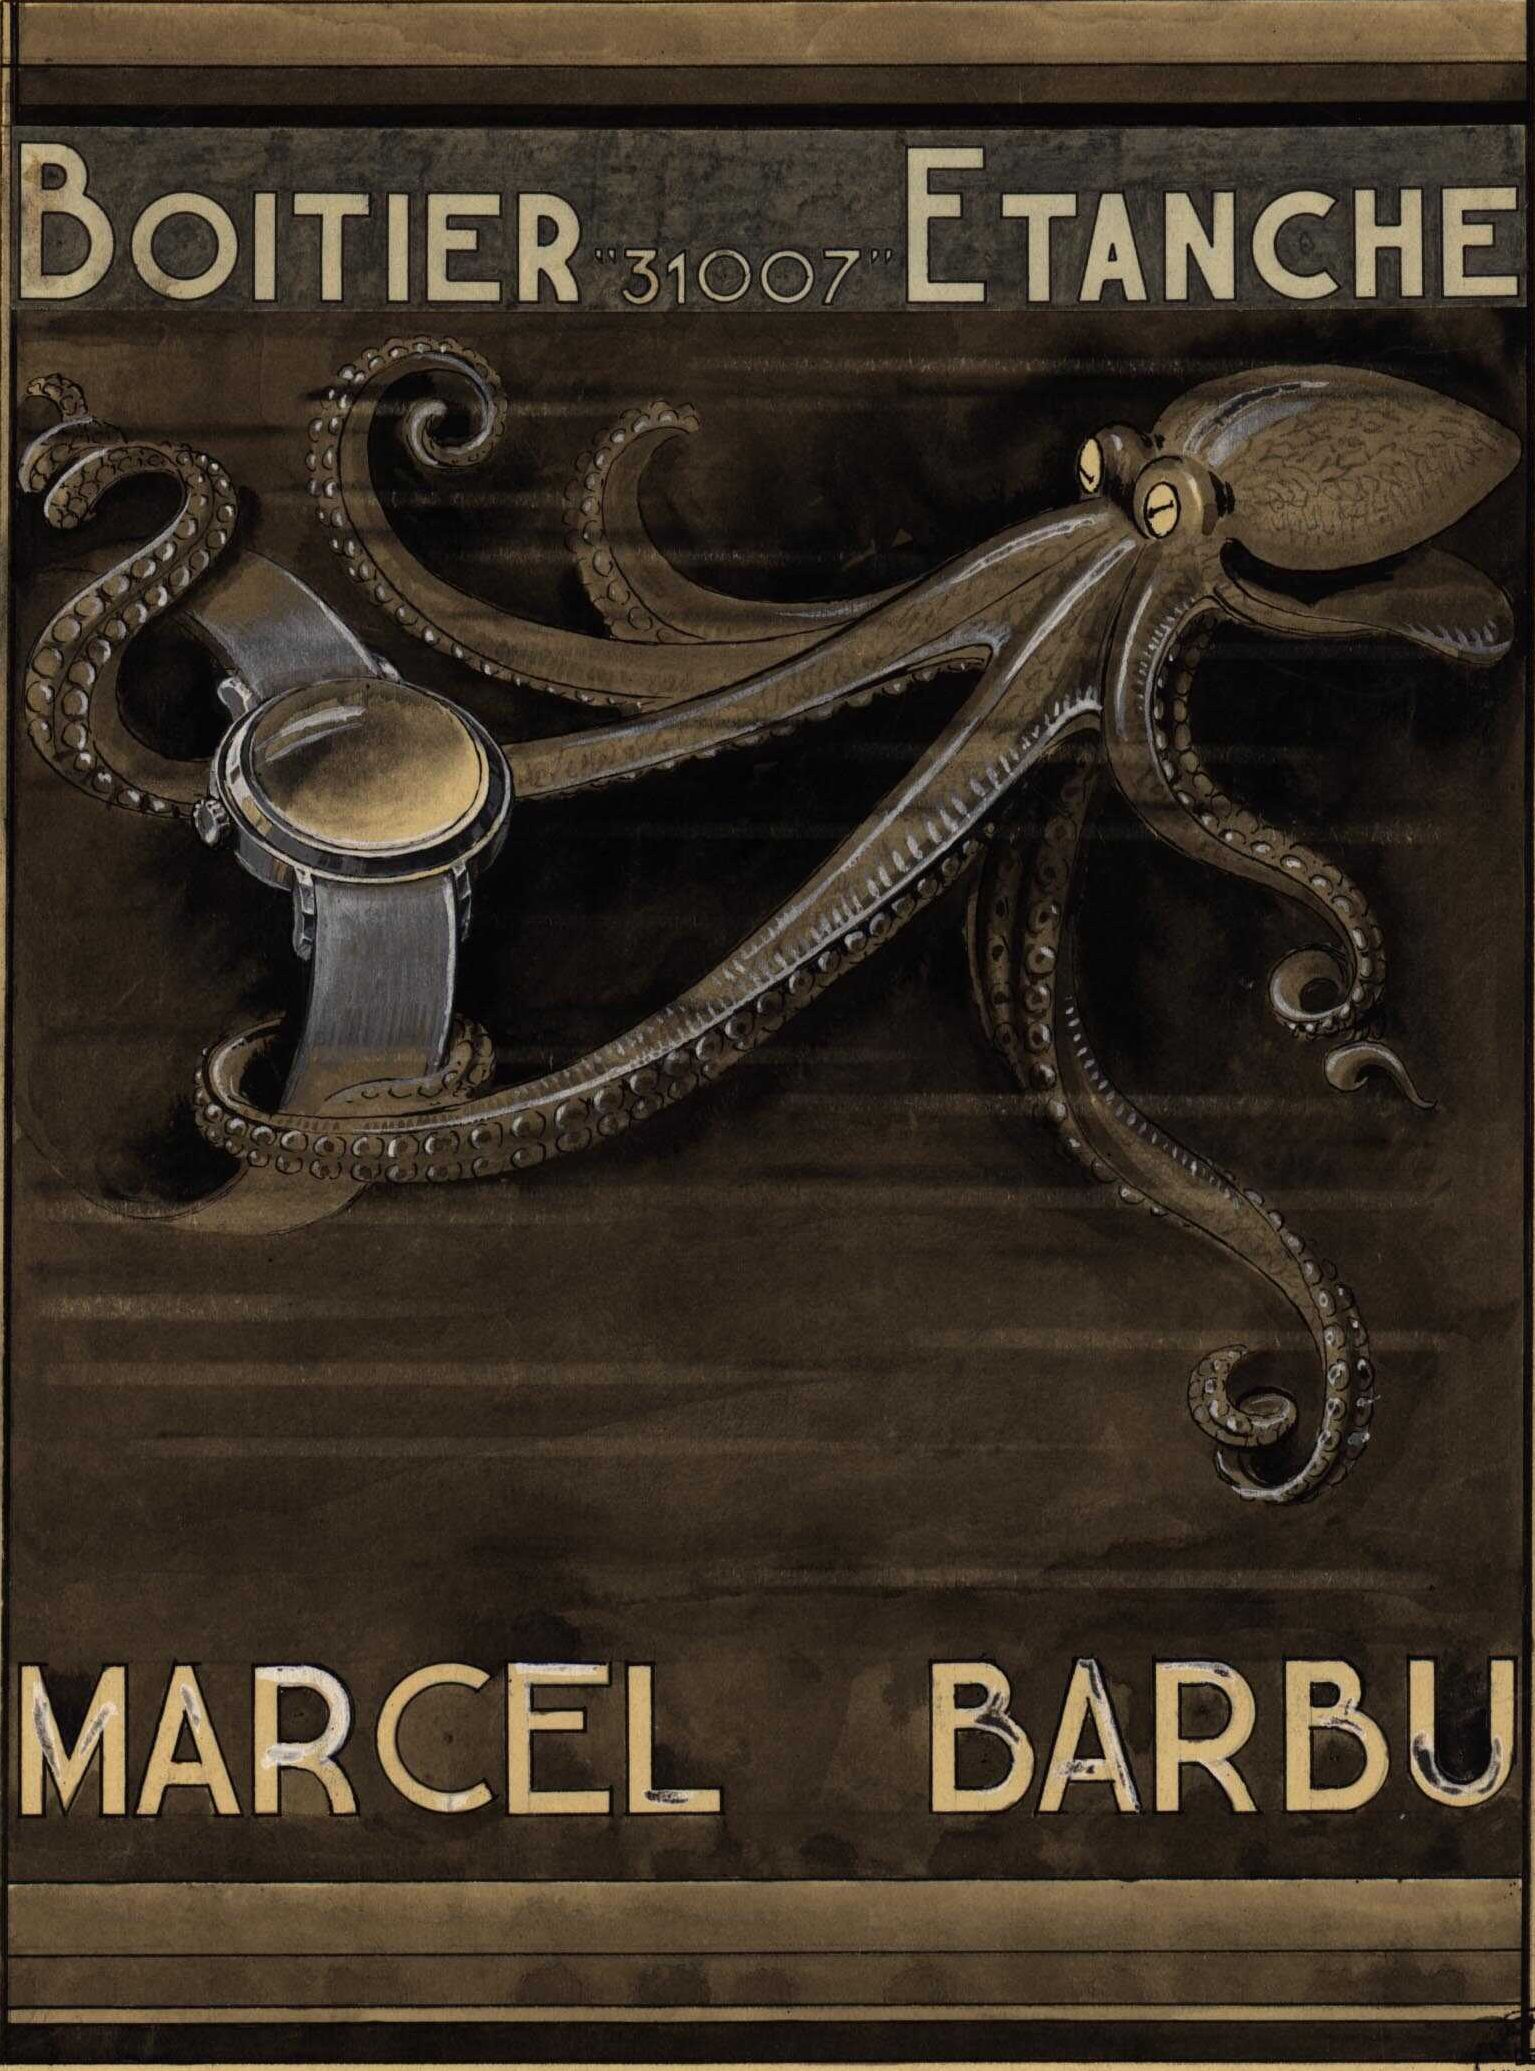 Société de montres étanches Marcel Barbu : affiche publicitaire (1938-1940, cote : 17FI/5)